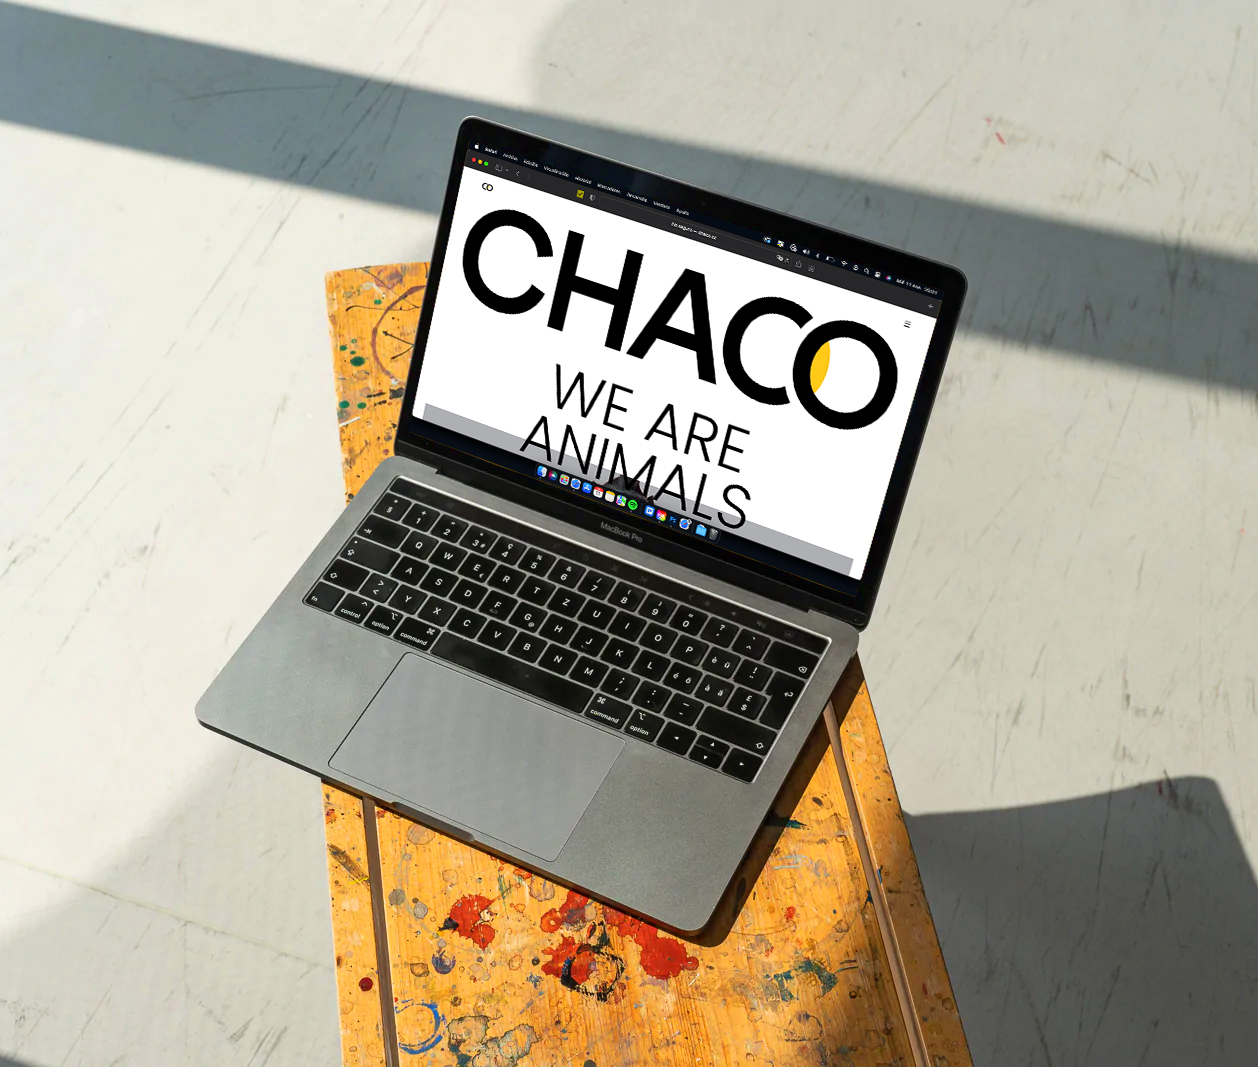 CHACO by Palacios Bros Studio